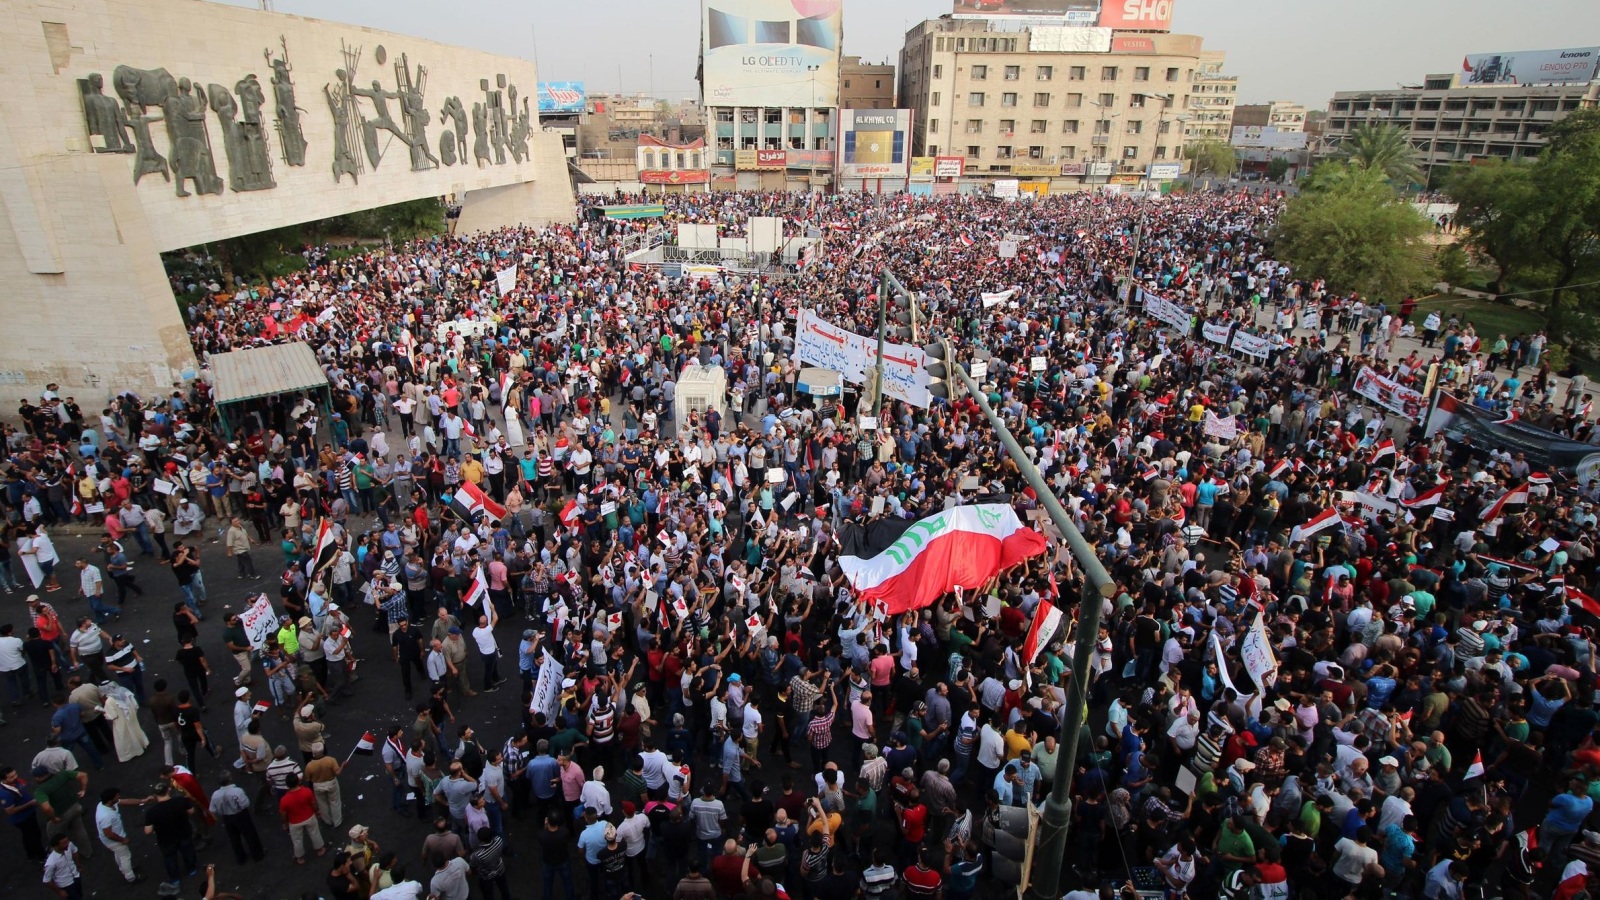 ‪احتجاجات سابقة بالعاصمة بغداد ضد تردي الخدمات وانقطاع الكهرباء‬ احتجاجات سابقة بالعاصمة بغداد ضد تردي الخدمات وانقطاع الكهرباء (غيتي)